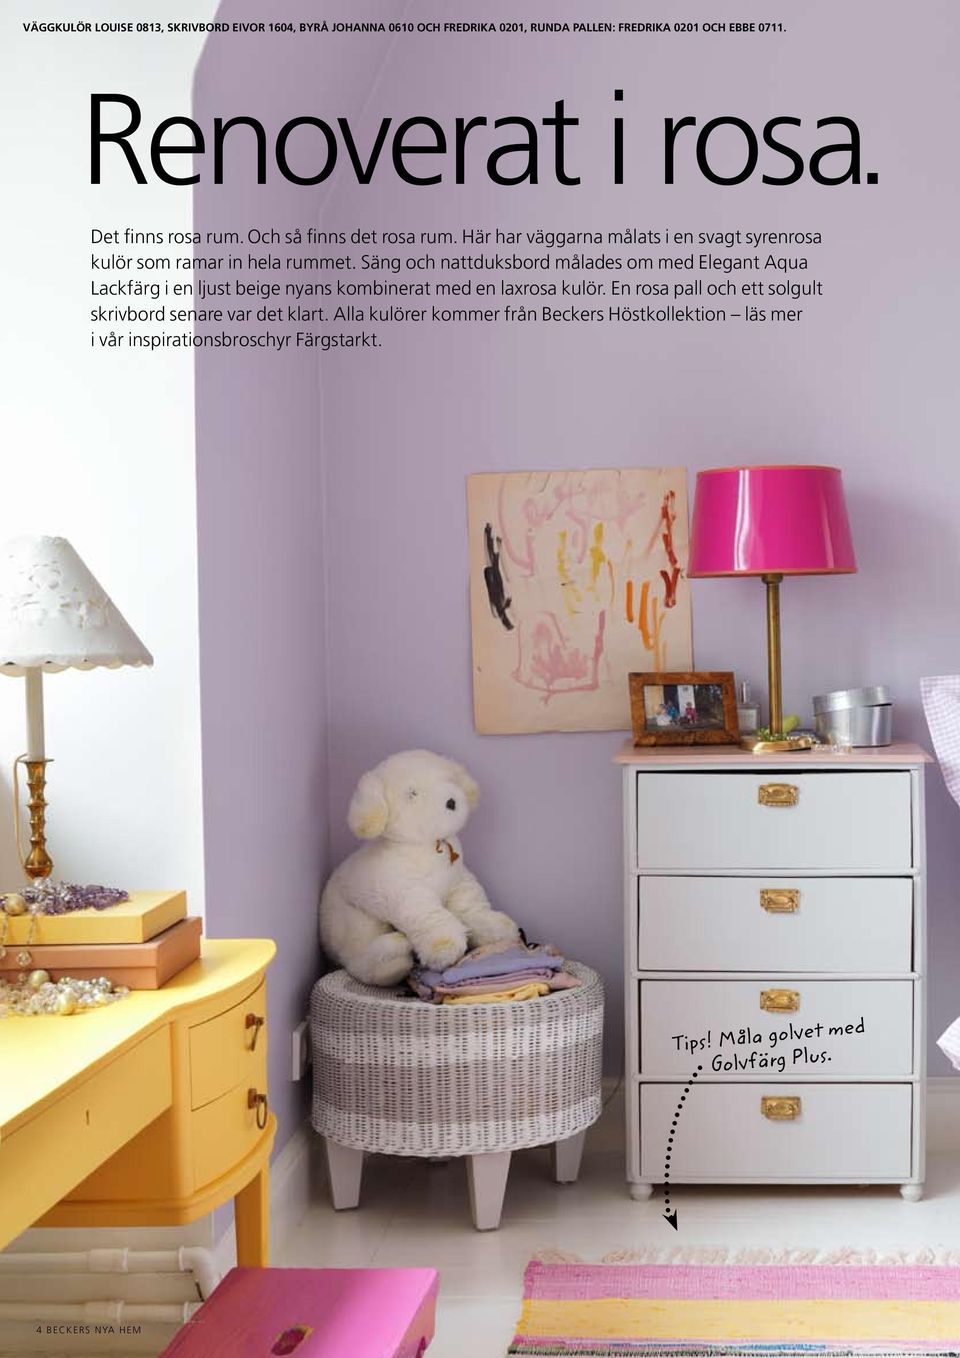 Säng och nattduksbord målades om med Elegant Aqua Lackfärg i en ljust beige nyans kombinerat med en laxrosa kulör.